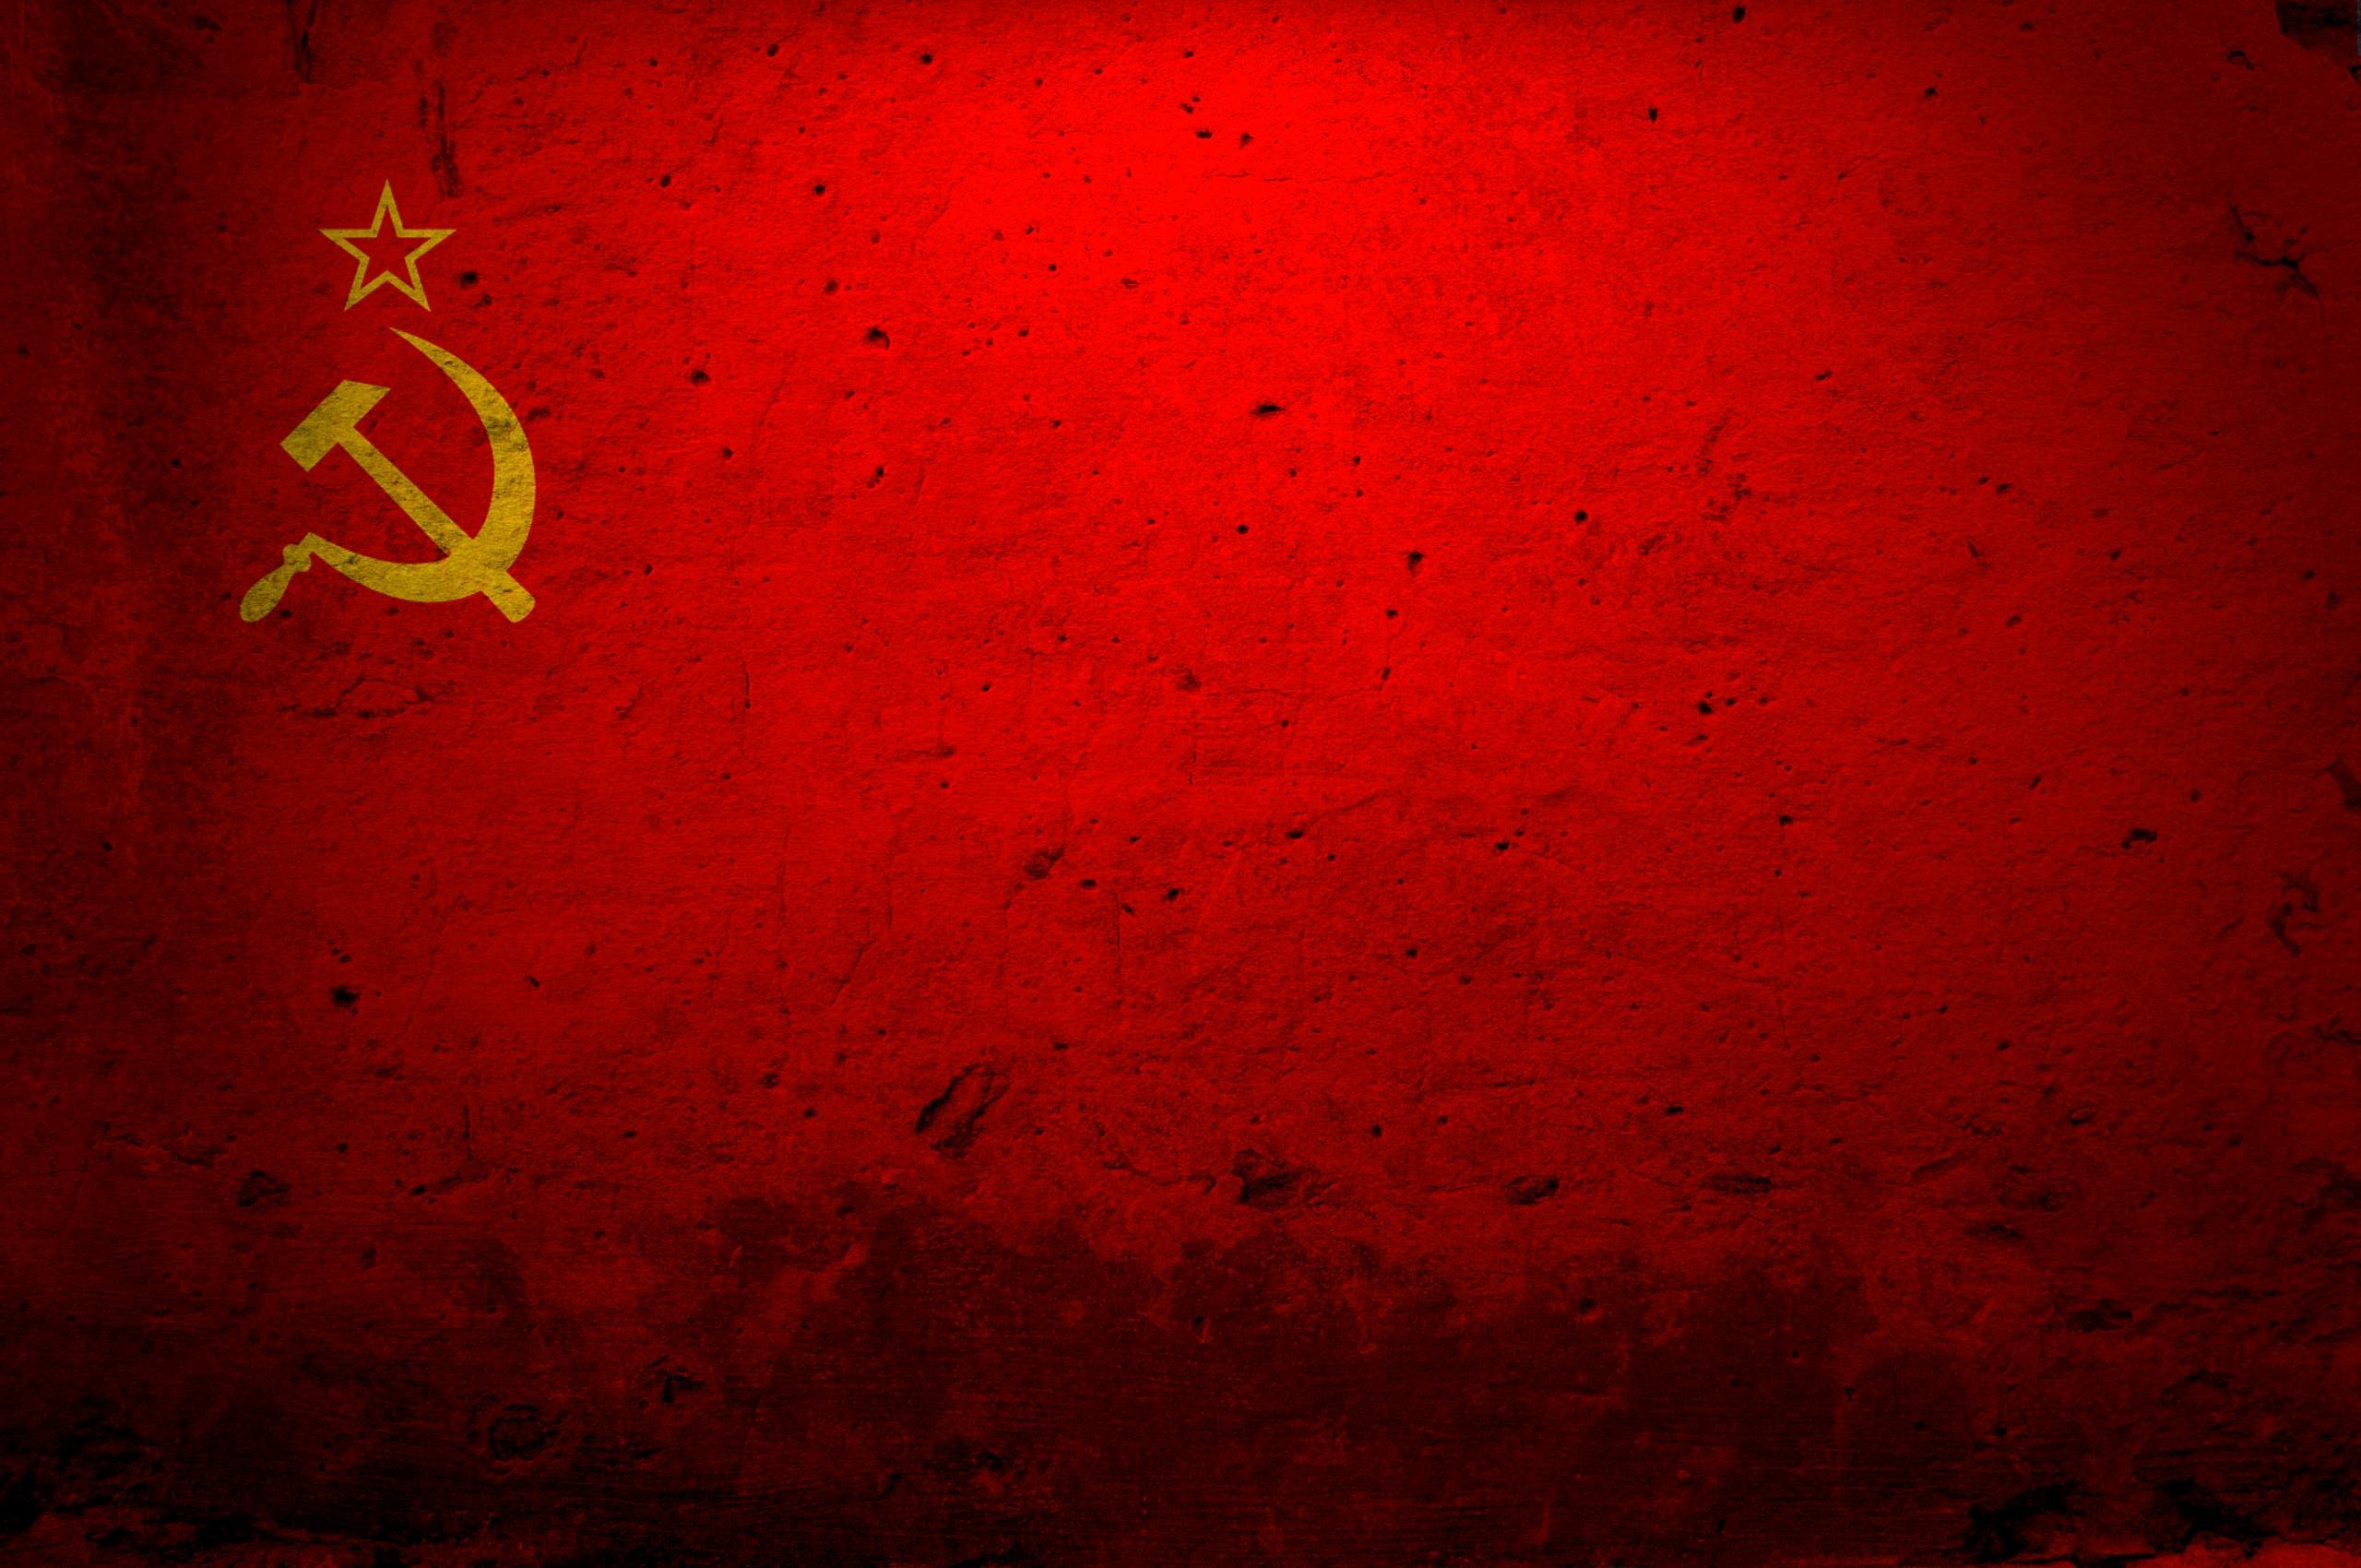 2560x1700 Desktop Wallpaper Communist Russia 600 X 422 183 Kb Jpeg |